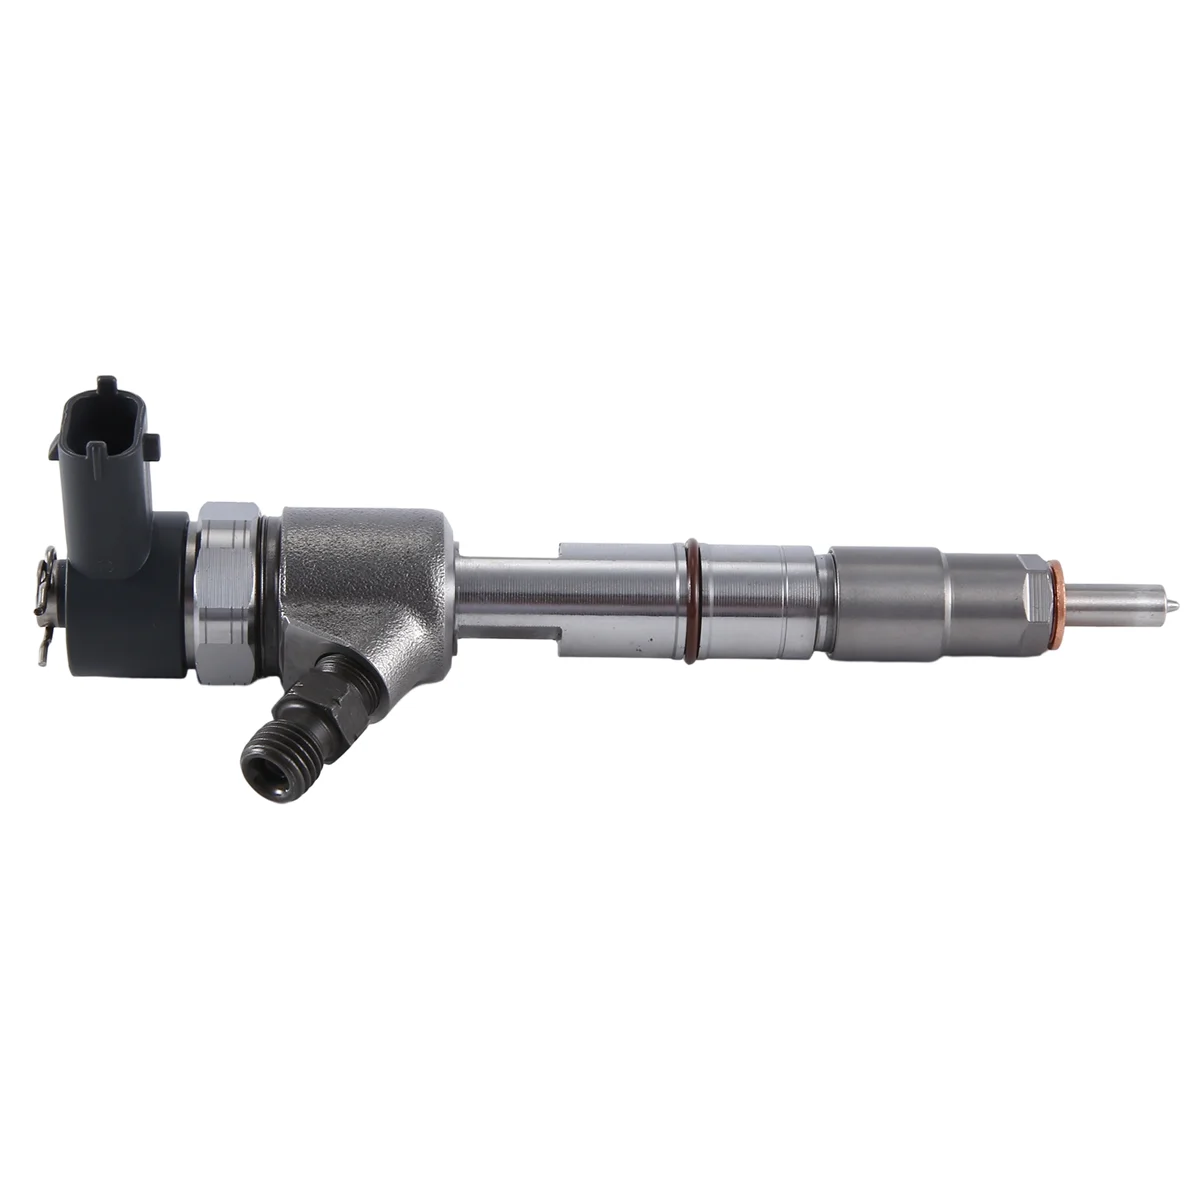 

0445110799 New Common Rail Crude Oil Fuel Injector Nozzle for QUANCHAI 4A1